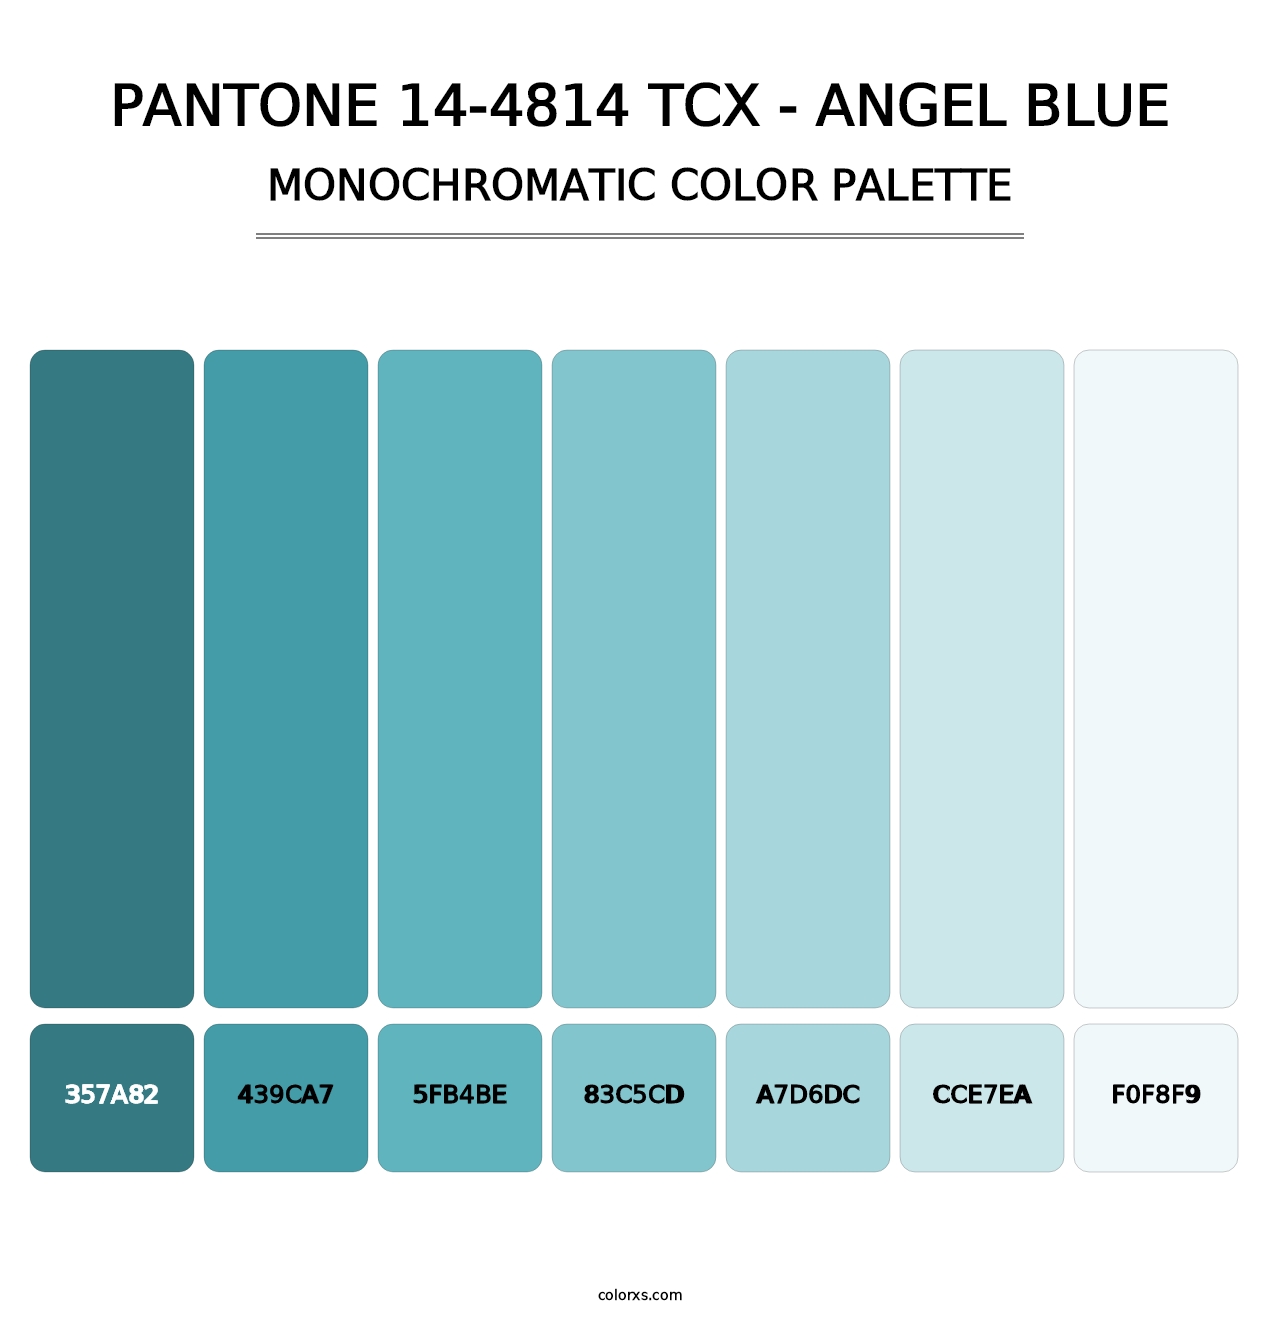 PANTONE 14-4814 TCX - Angel Blue - Monochromatic Color Palette